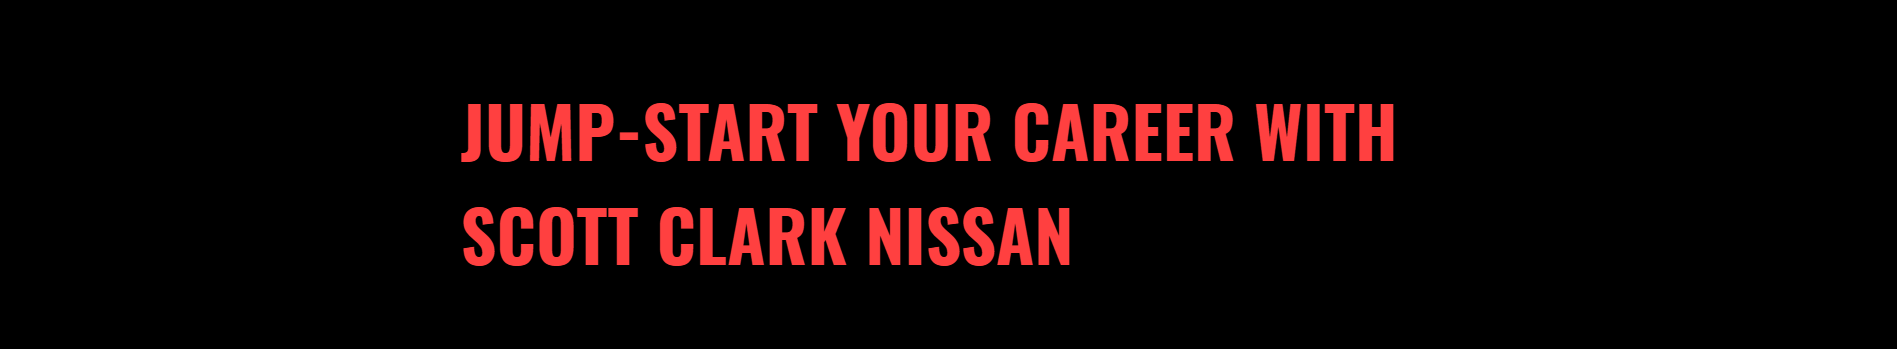 Scott Clark Nissan Careers